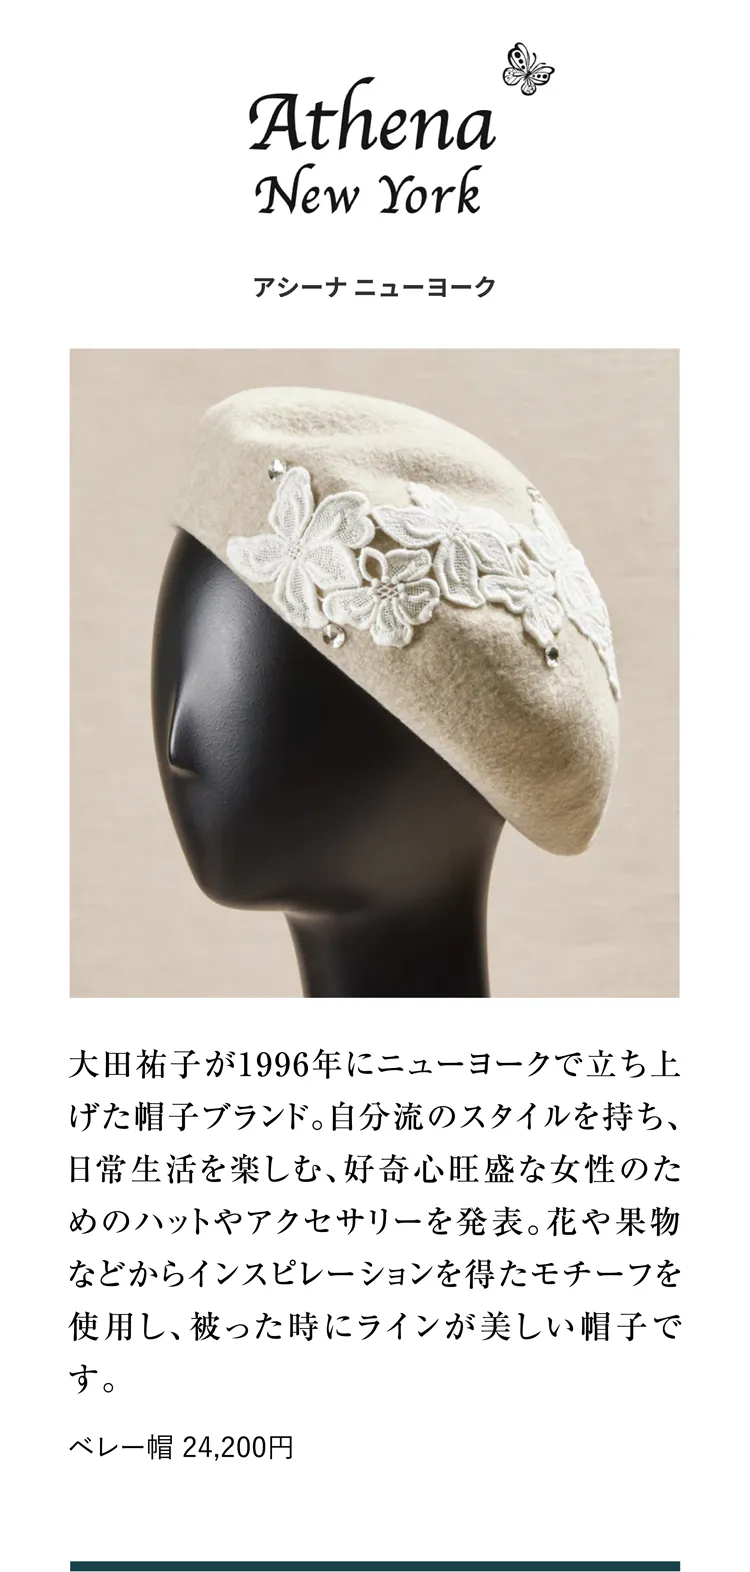 アシーナ ニューヨーク 大田祐子が1996年にニューヨークで立ち上げた帽子ブランド。自分流のスタイルを持ち、日常生活を楽しむ、好奇心旺盛な女性のためのハットやアクセサリーを発表。花や果物などからインスピレーションを得たモチーフを使用し、被った時にラインが美しい帽子です。ベレー帽 24,200円